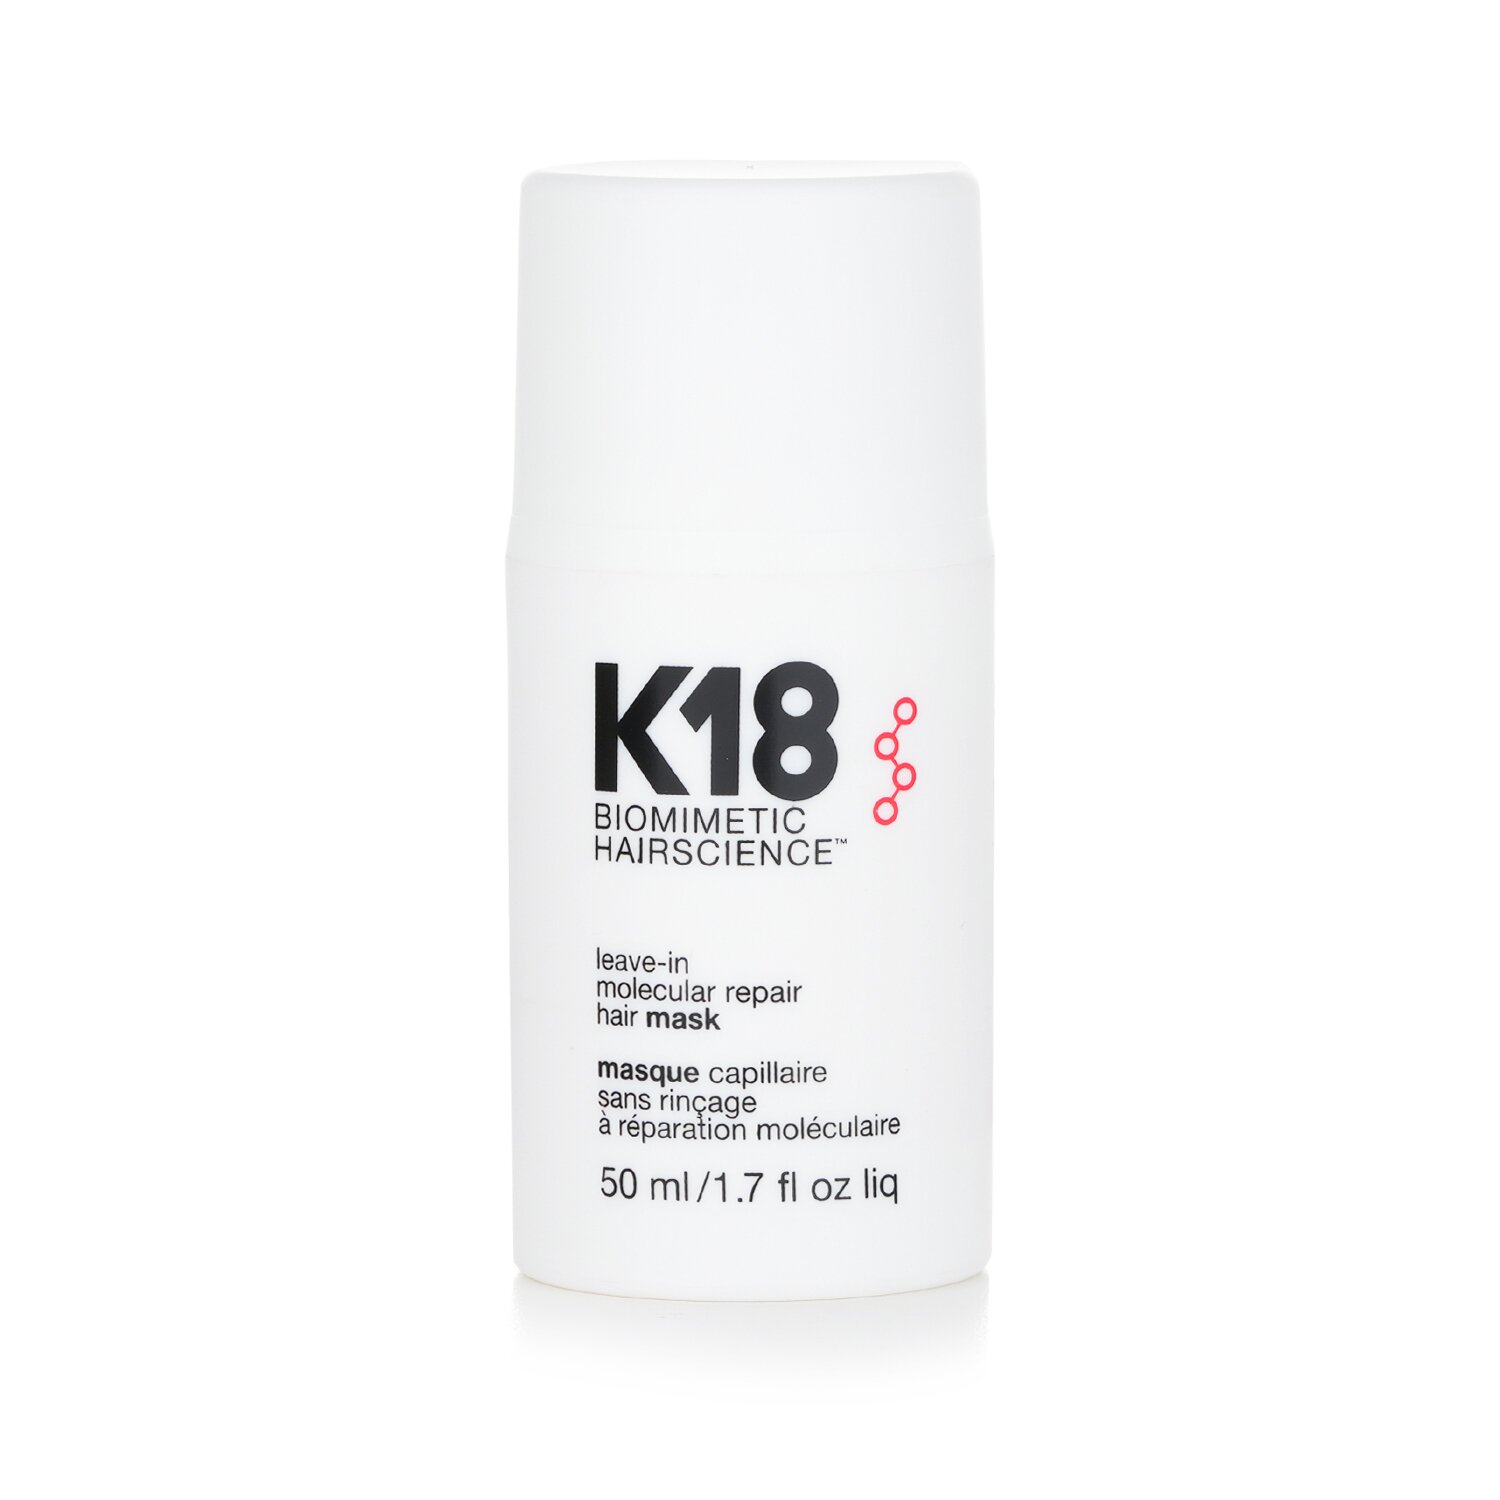 K18 قناع الإصلاح الجزيئي يترك على الشعر 50ml/1.7oz